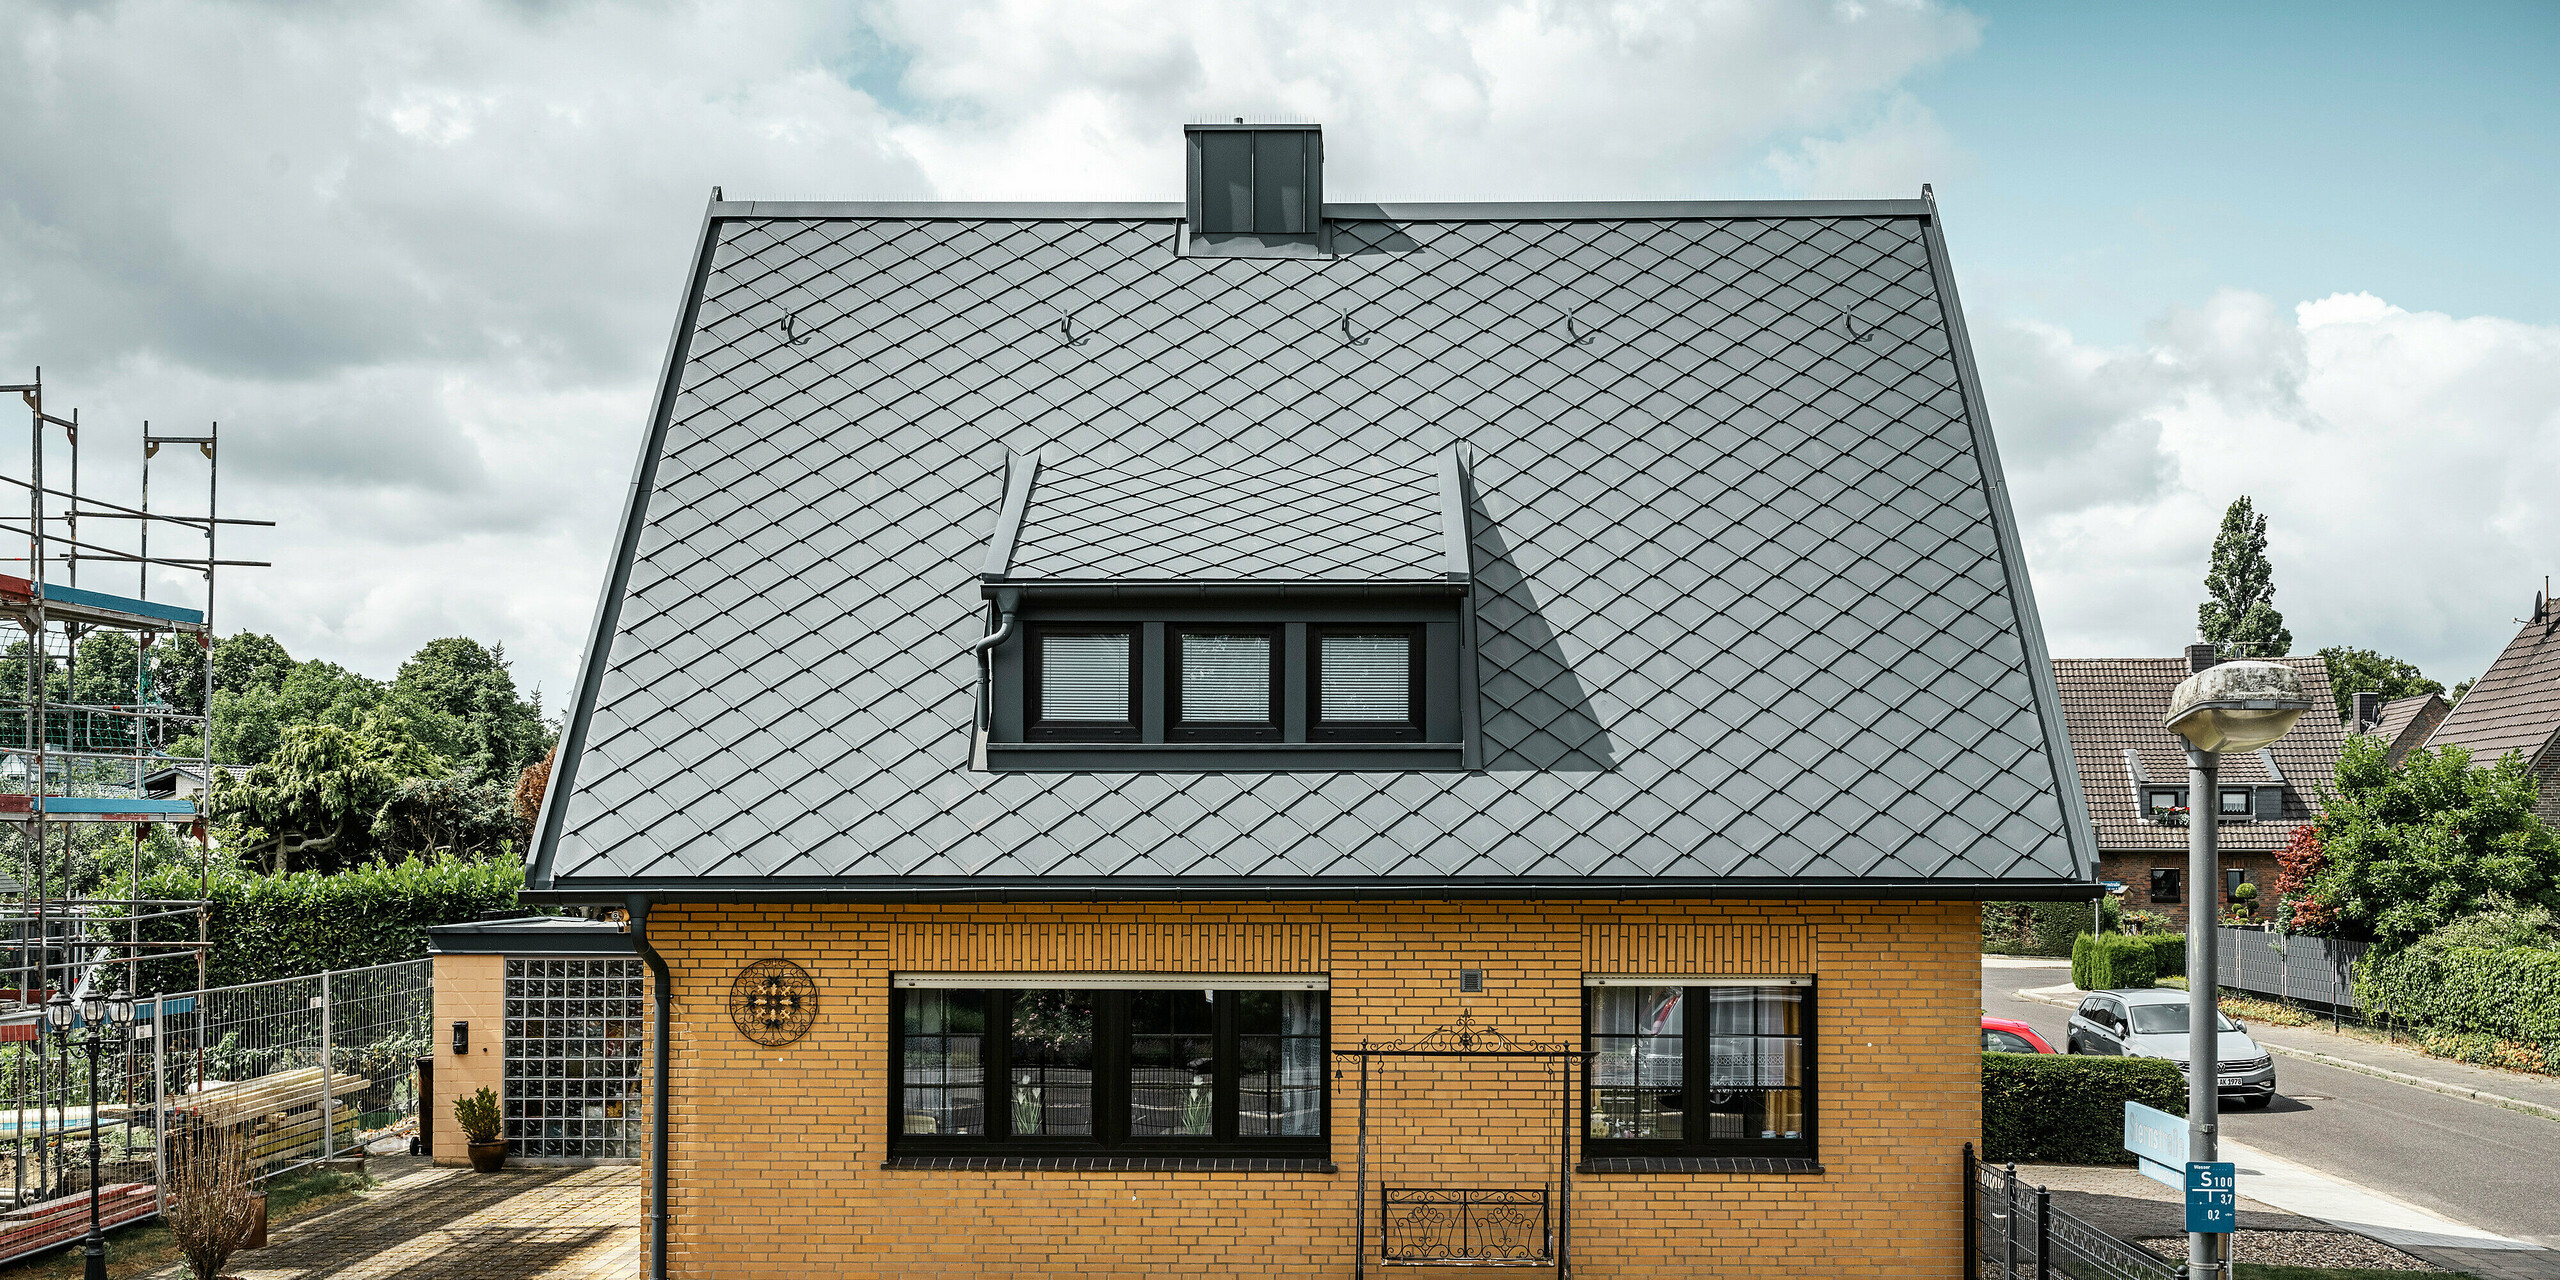 Stranski pogled na enodružinsko hišo v Tönisvorstu s PREFA streho antracitne barve s strešnimi rombi 29×29. Kombinacija tradicionalne rumene opeke s sodobnimi strešnimi elementi in dodatki iz aluminija ustvarja harmoničen videz. Mansarde in dimnik, tudi v antracitni barvi, zaokrožujejo estetsko in funkcionalno streho v malem mestu.